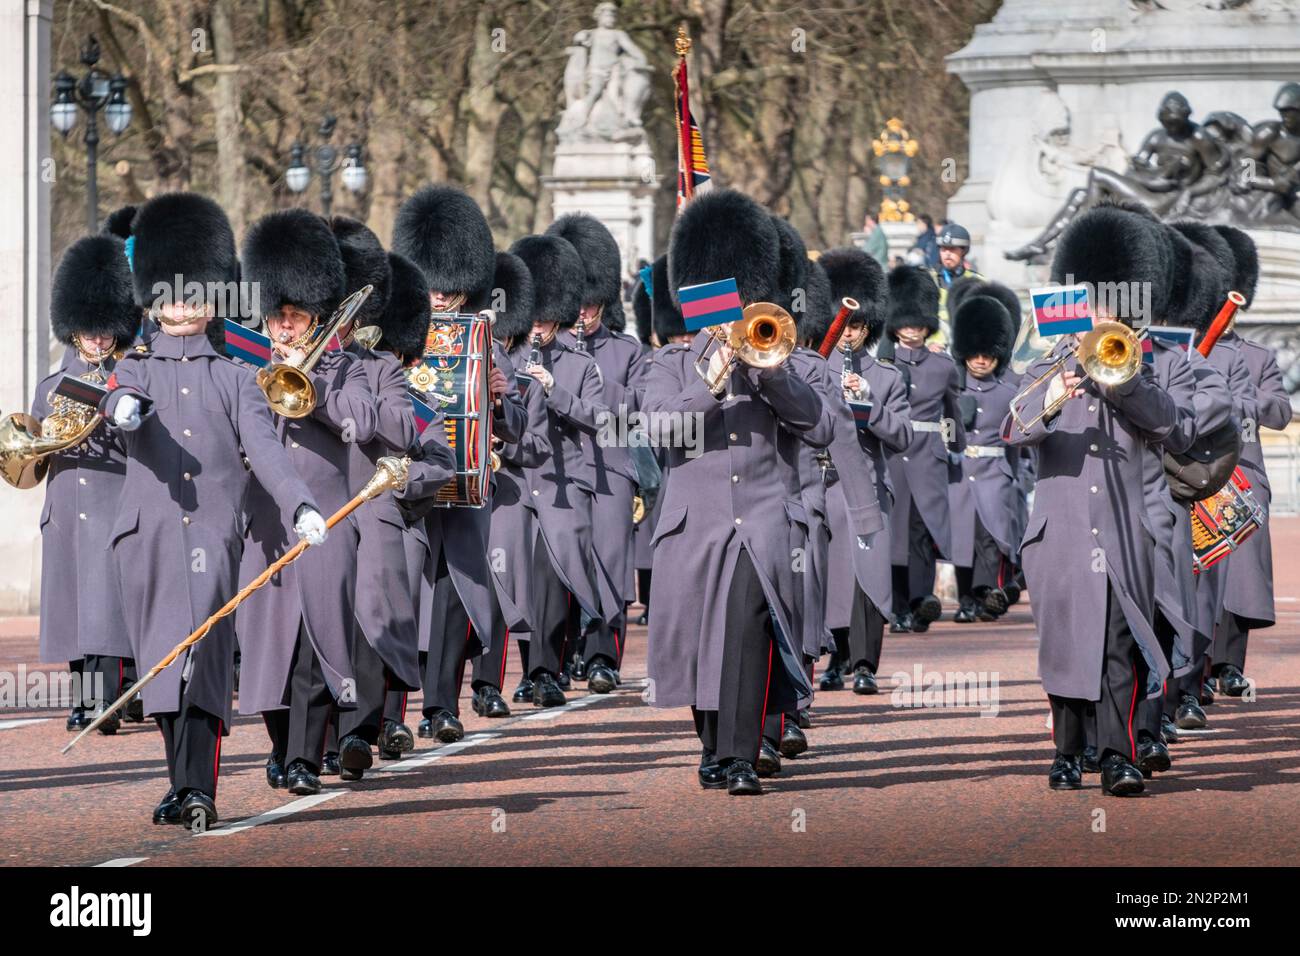 Londres, Buckingham Palace, relève de la garde. Irish Guards - Garde-pieds de la Division des ménages. Marching Royal Guards. Uniforme d'hiver. Changement de protection Banque D'Images